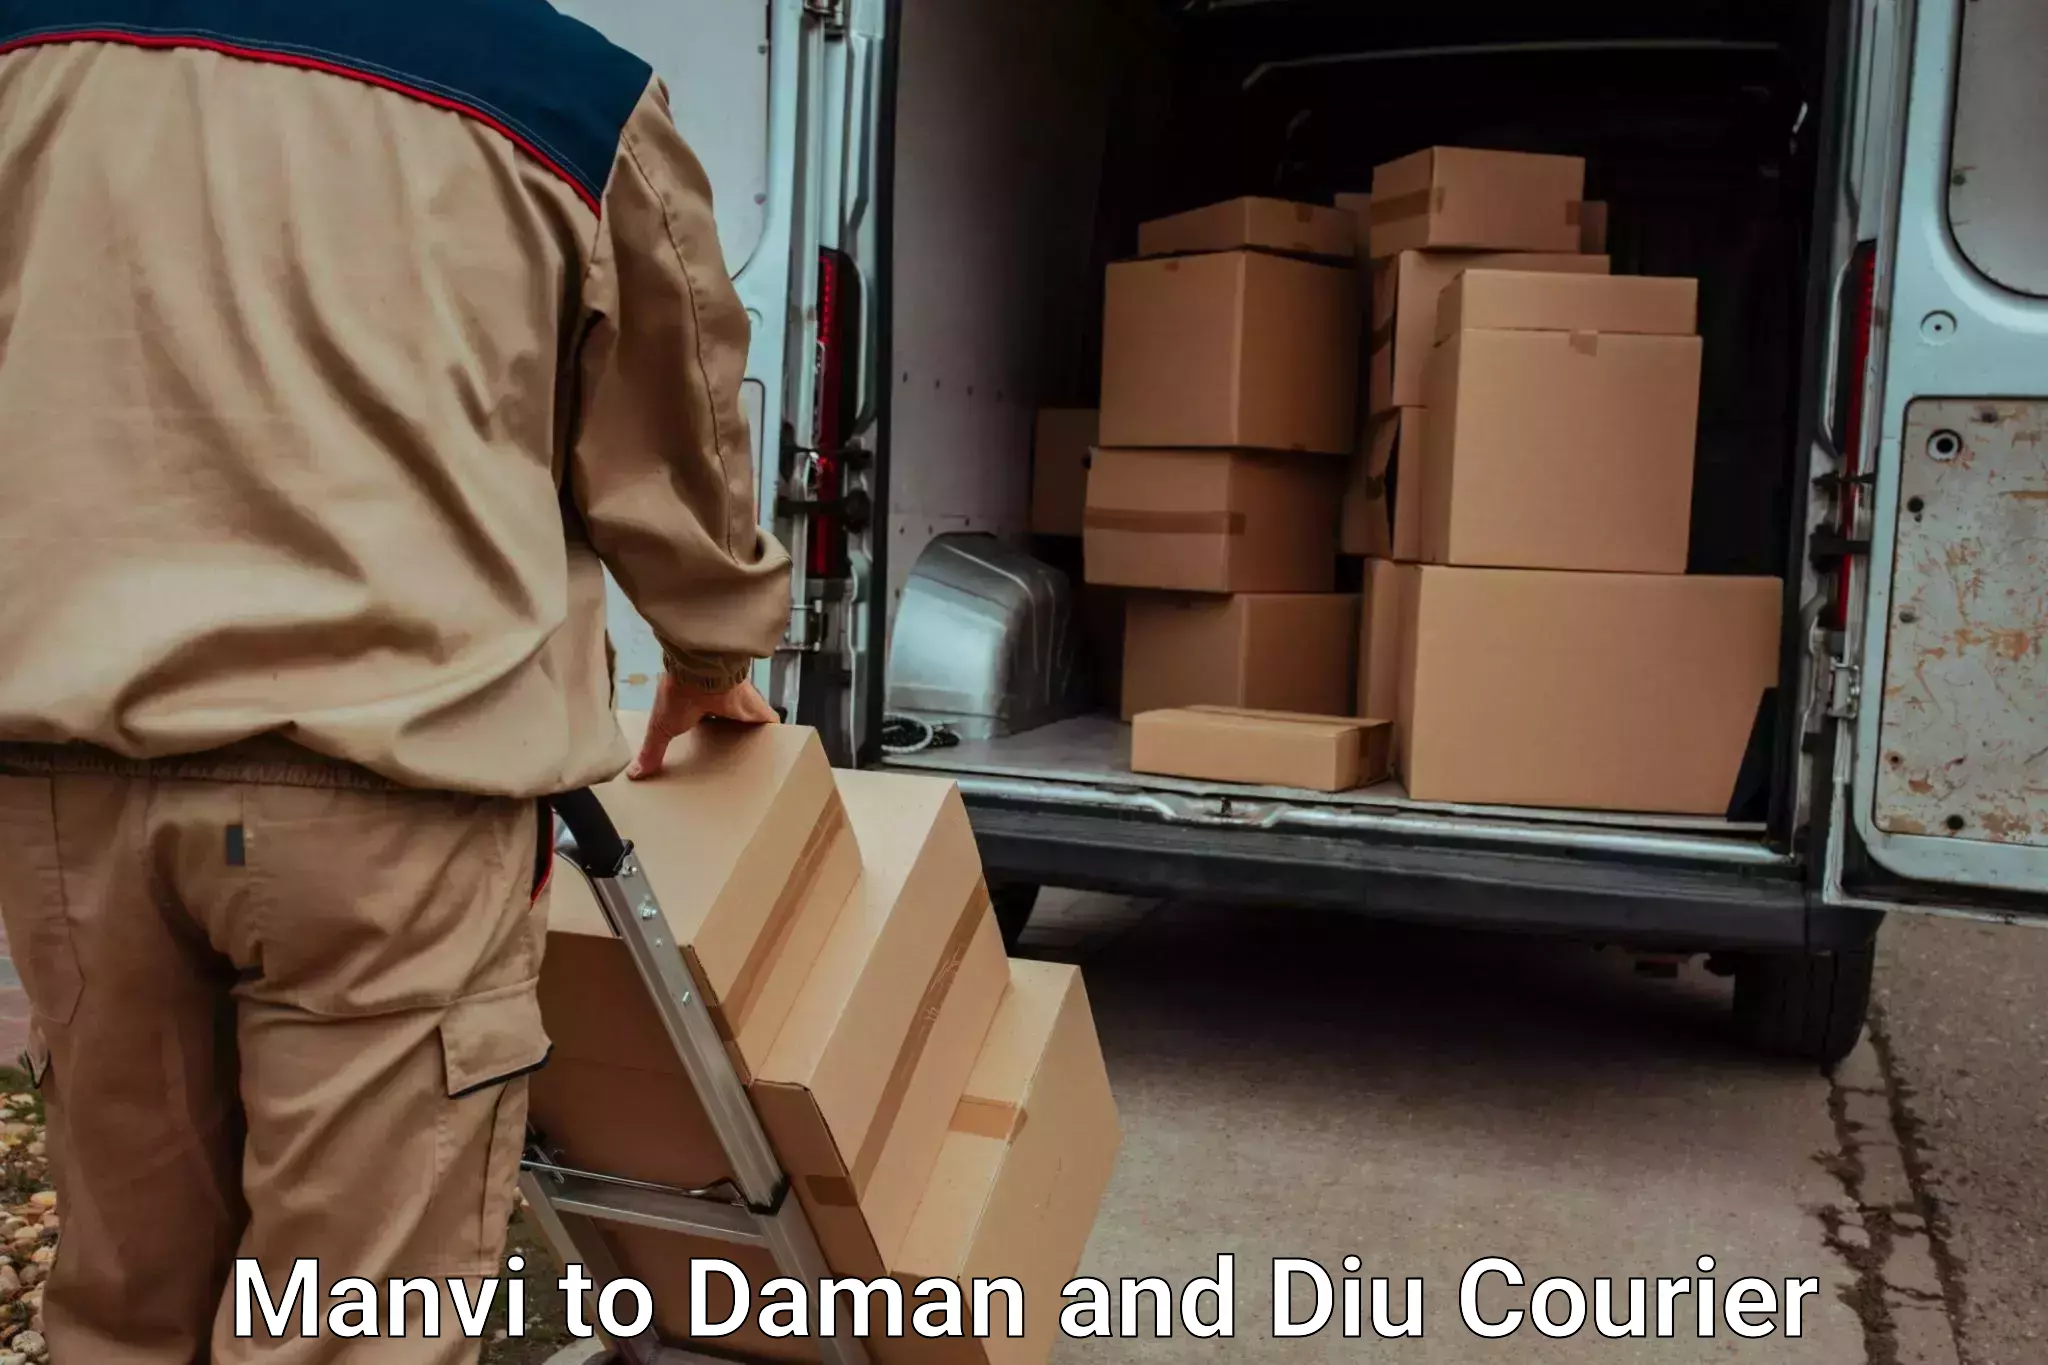 Furniture delivery service Manvi to Diu